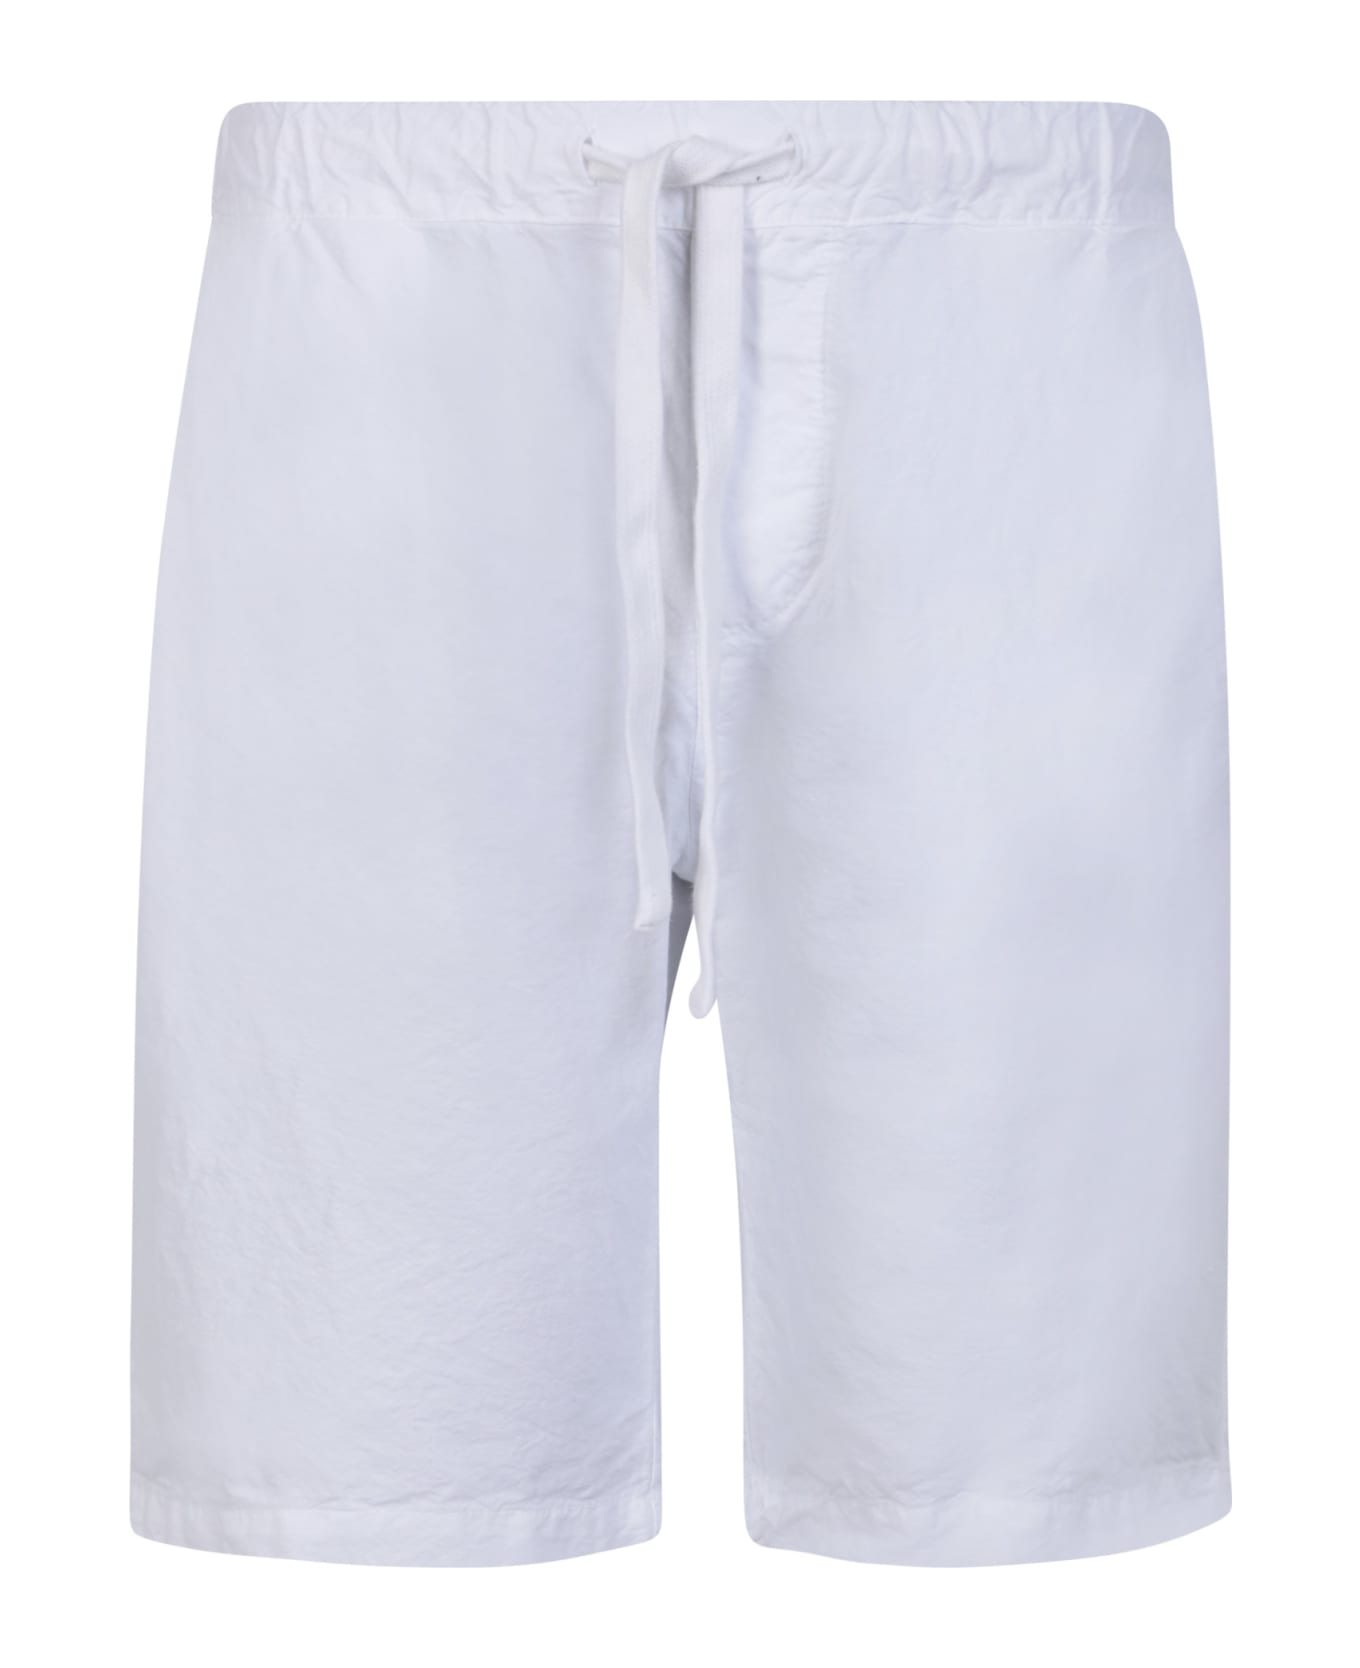 Original Vintage Style White Cotton Bermuda Shorts - White